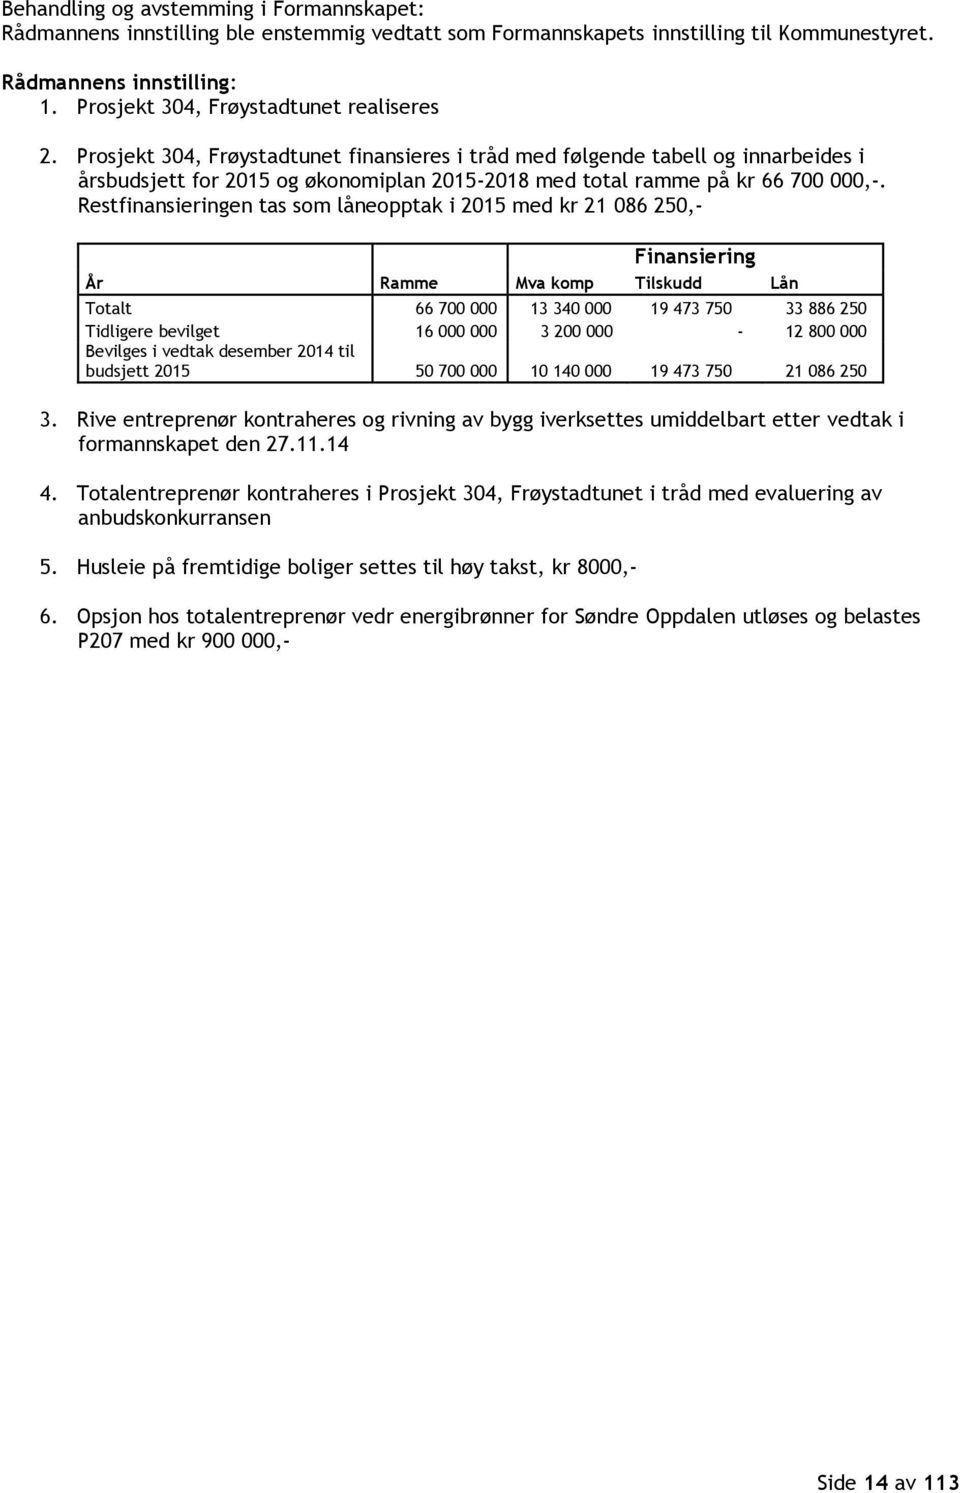 Prosjekt 304, Frøystadtunet finansieres i tråd med følgende tabell og innarbeides i årsbudsjett for 2015 og økonomiplan 2015-2018 med total ramme på kr 66 700 000,-.